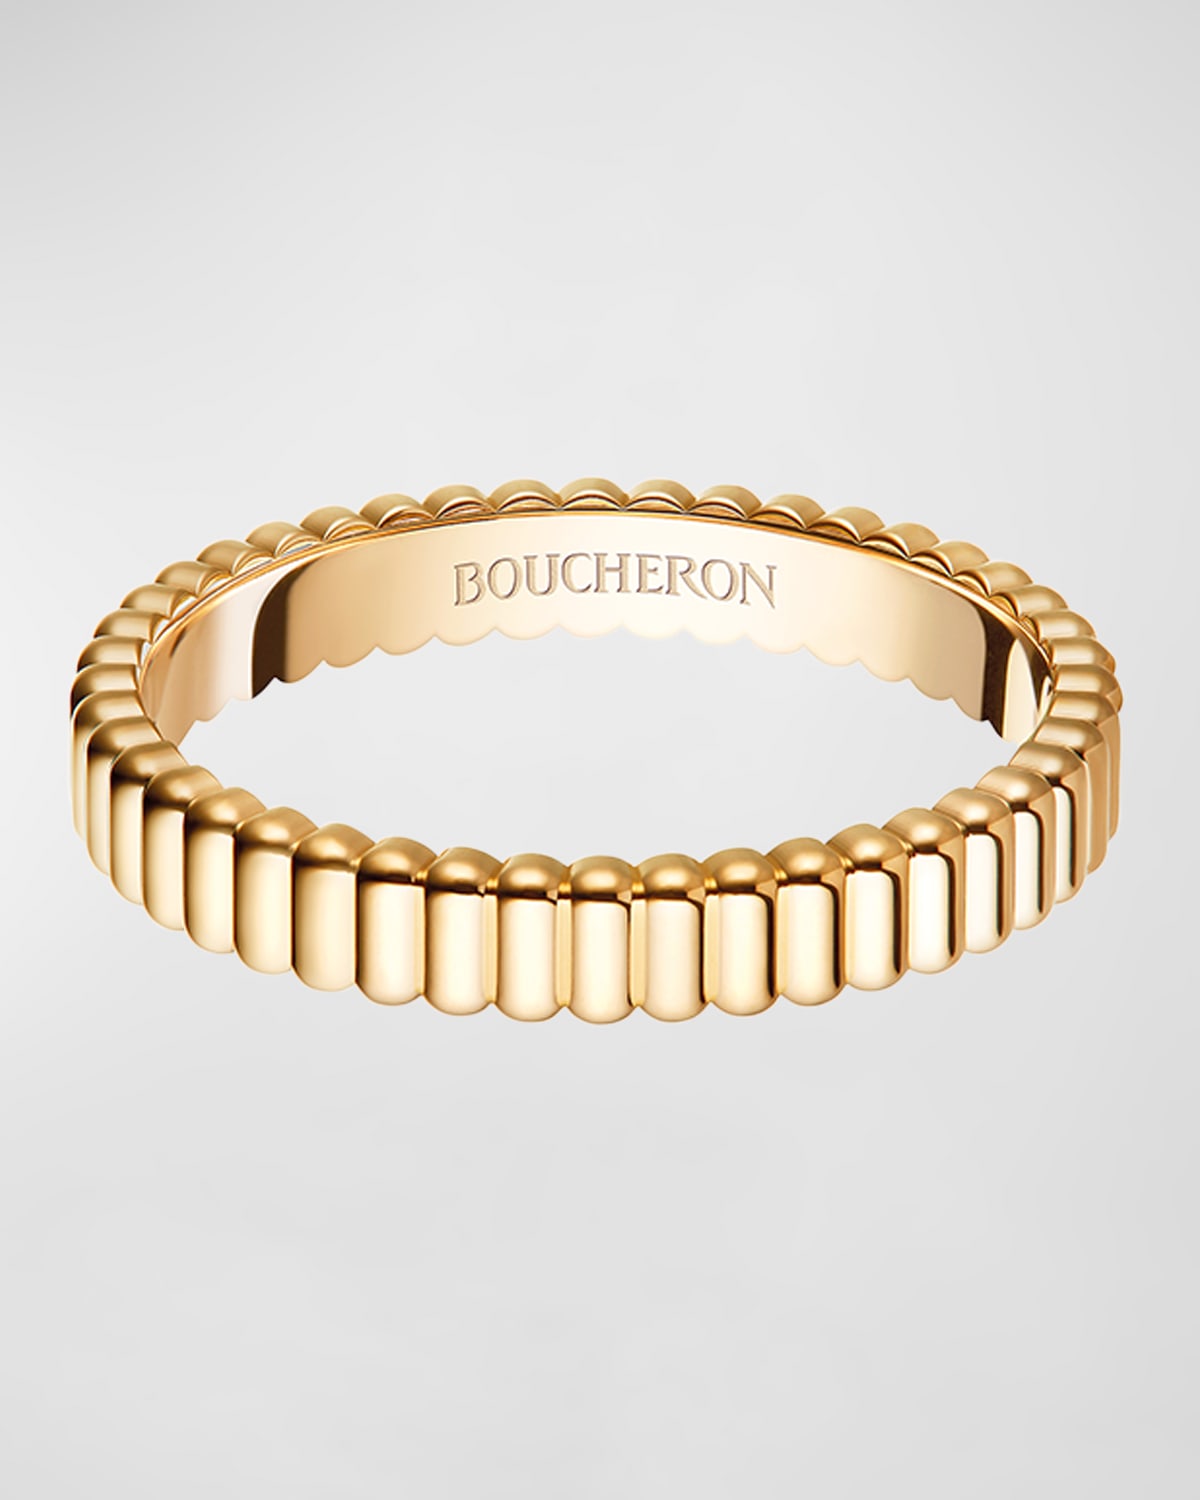 Boucheron Quatre Clou de Paris Bracelet in 18K Rose Gold, Size 16